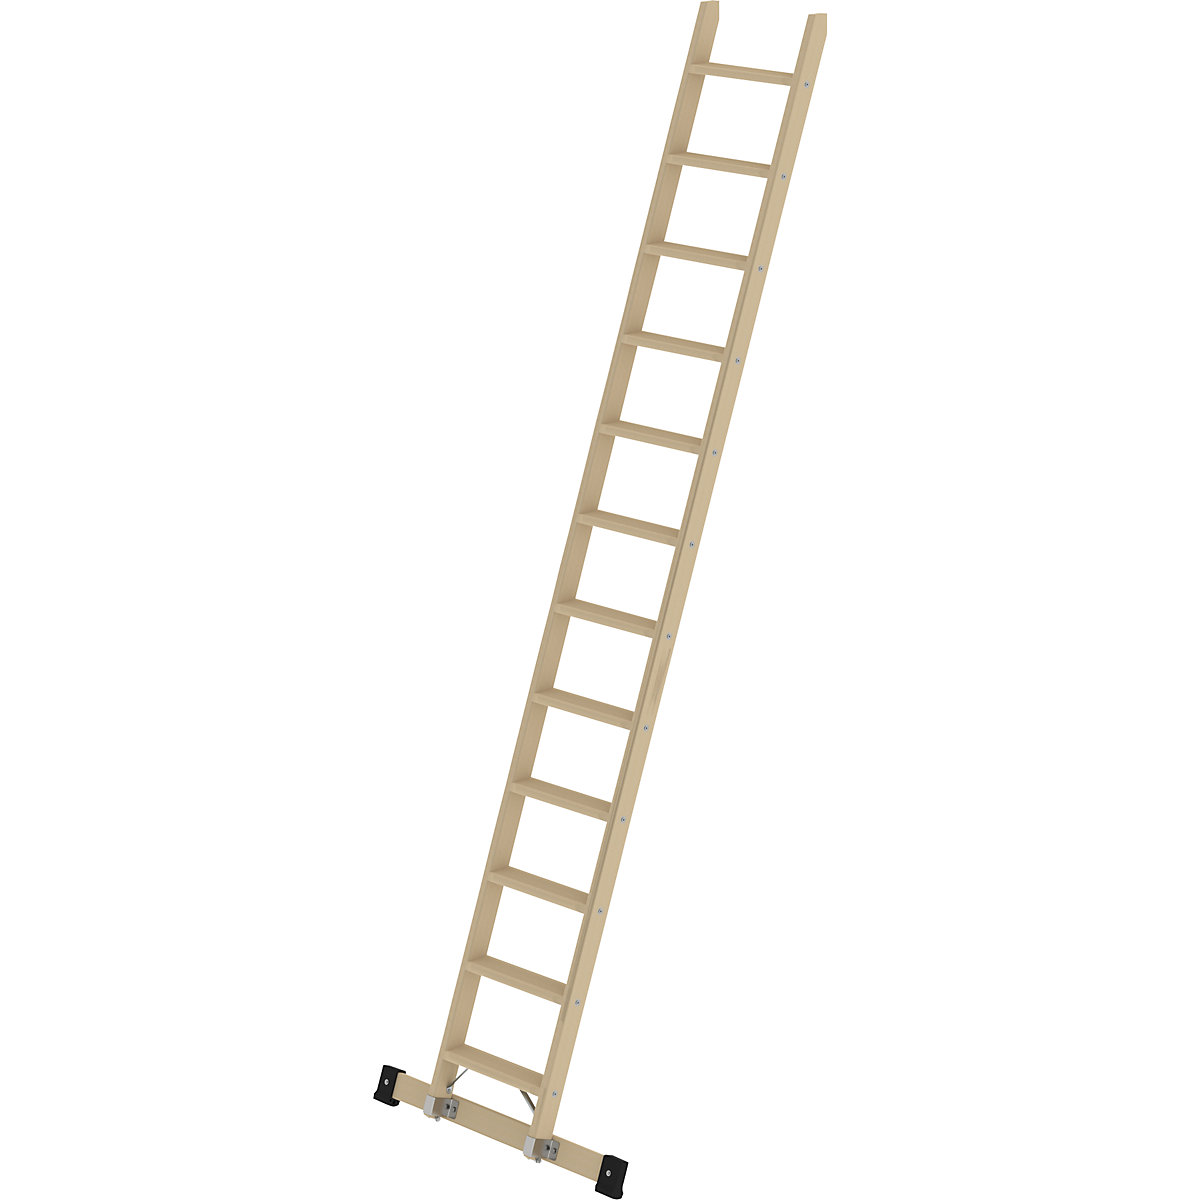 Drevený príložný rebrík – MUNK, so stupňami, 12 stupňov s priečnikom-4